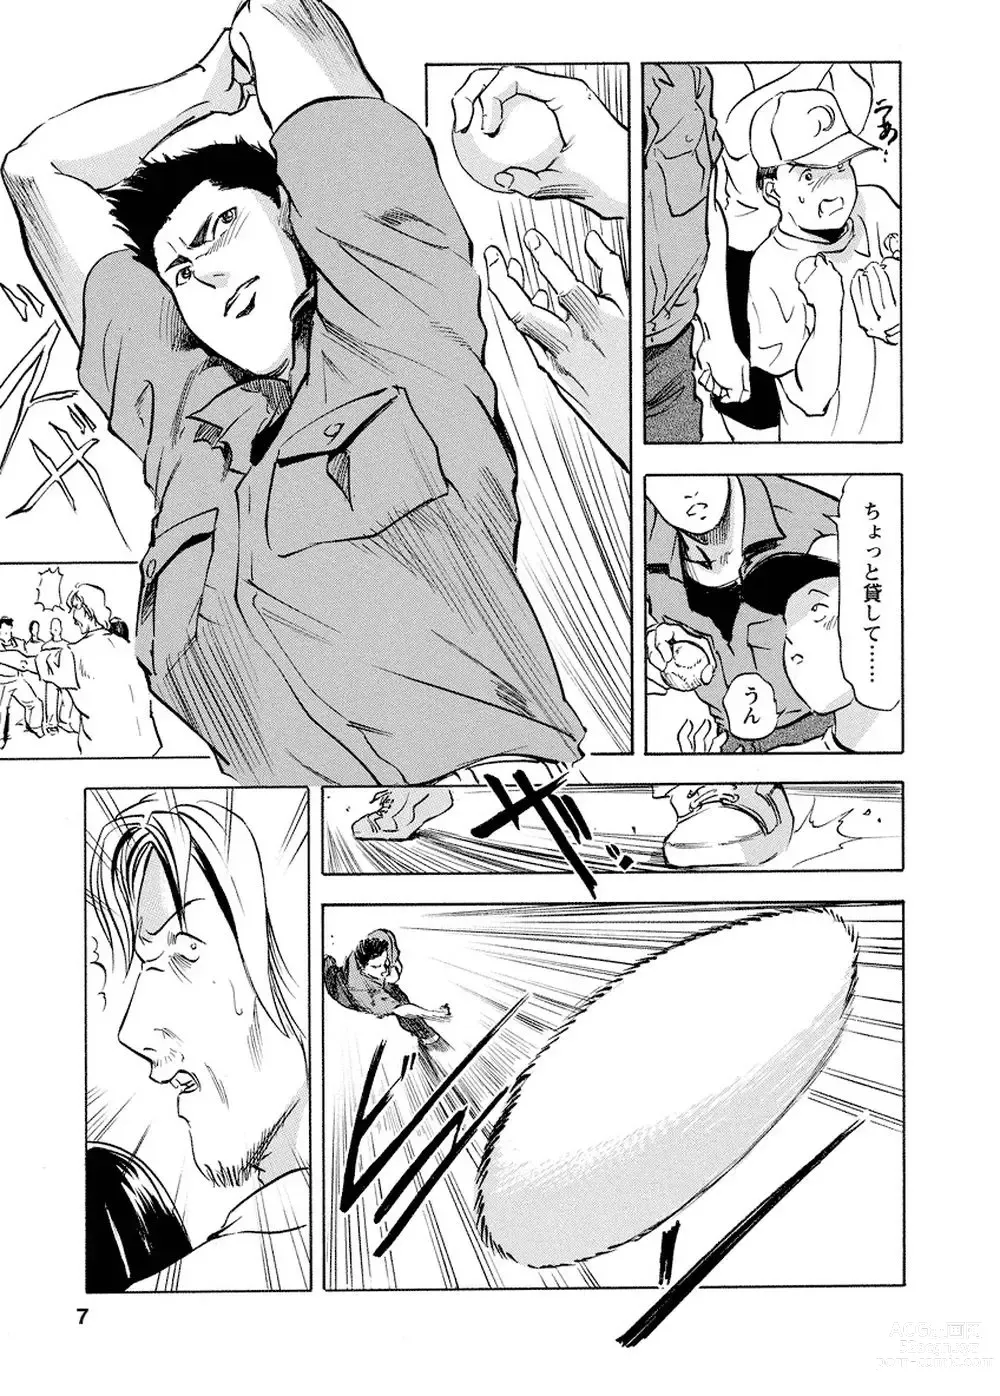 Page 6 of manga Tsuyako no Yu Vol.4